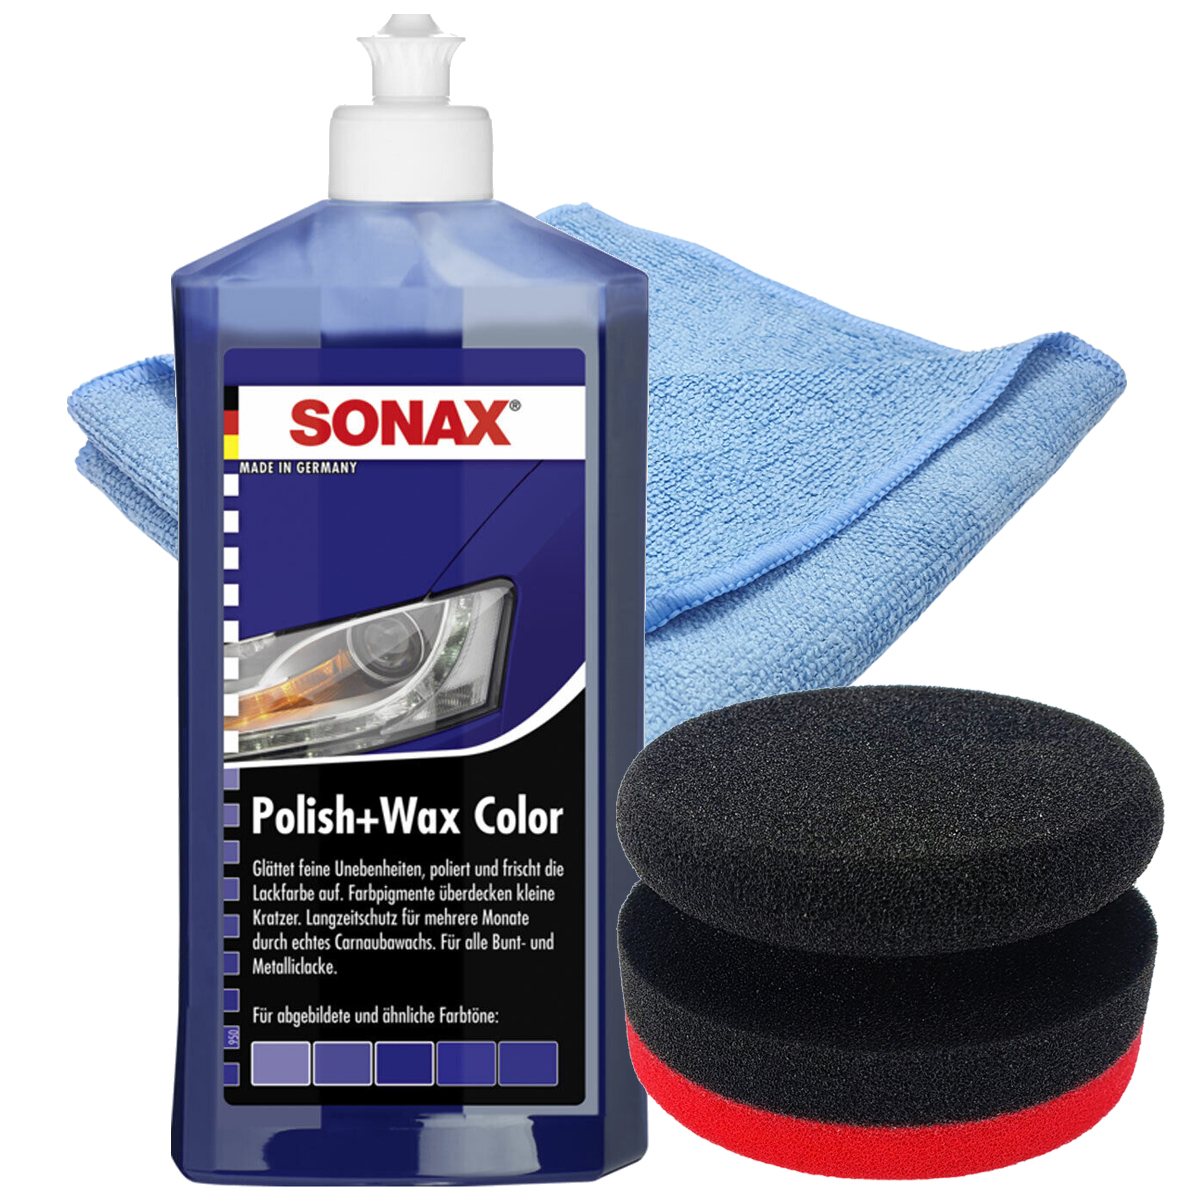 SONAX 500ml Polish + Wax Color BLAU + Craft-Equip Ø90mm Polierpuck ROT +  Craft-Equip Microfasertuch BLAU - Werkstatt-Store , Werkstattbedarf,  Lackierbedarf, Schleifmittel und vieles mehr